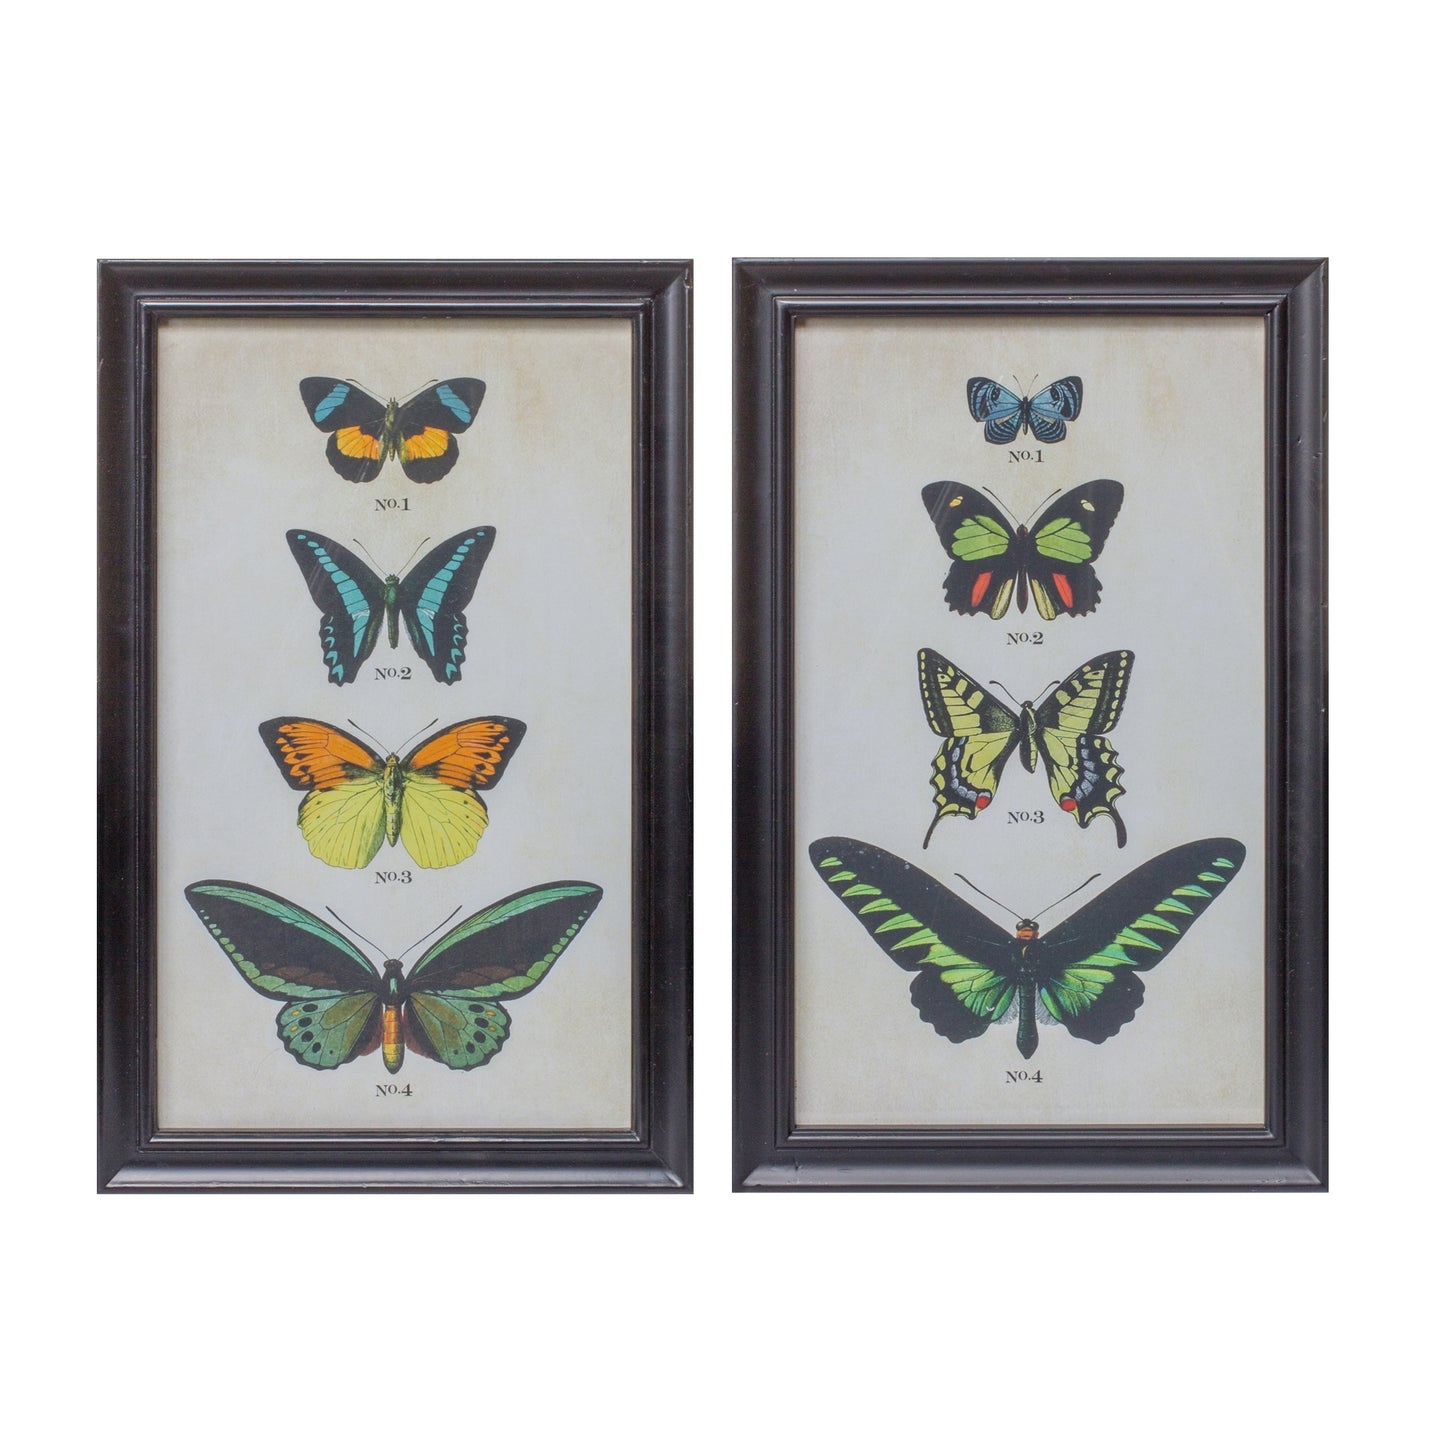 Framed Encyclopedia Butterfly Print Under Glass (Set of 2)